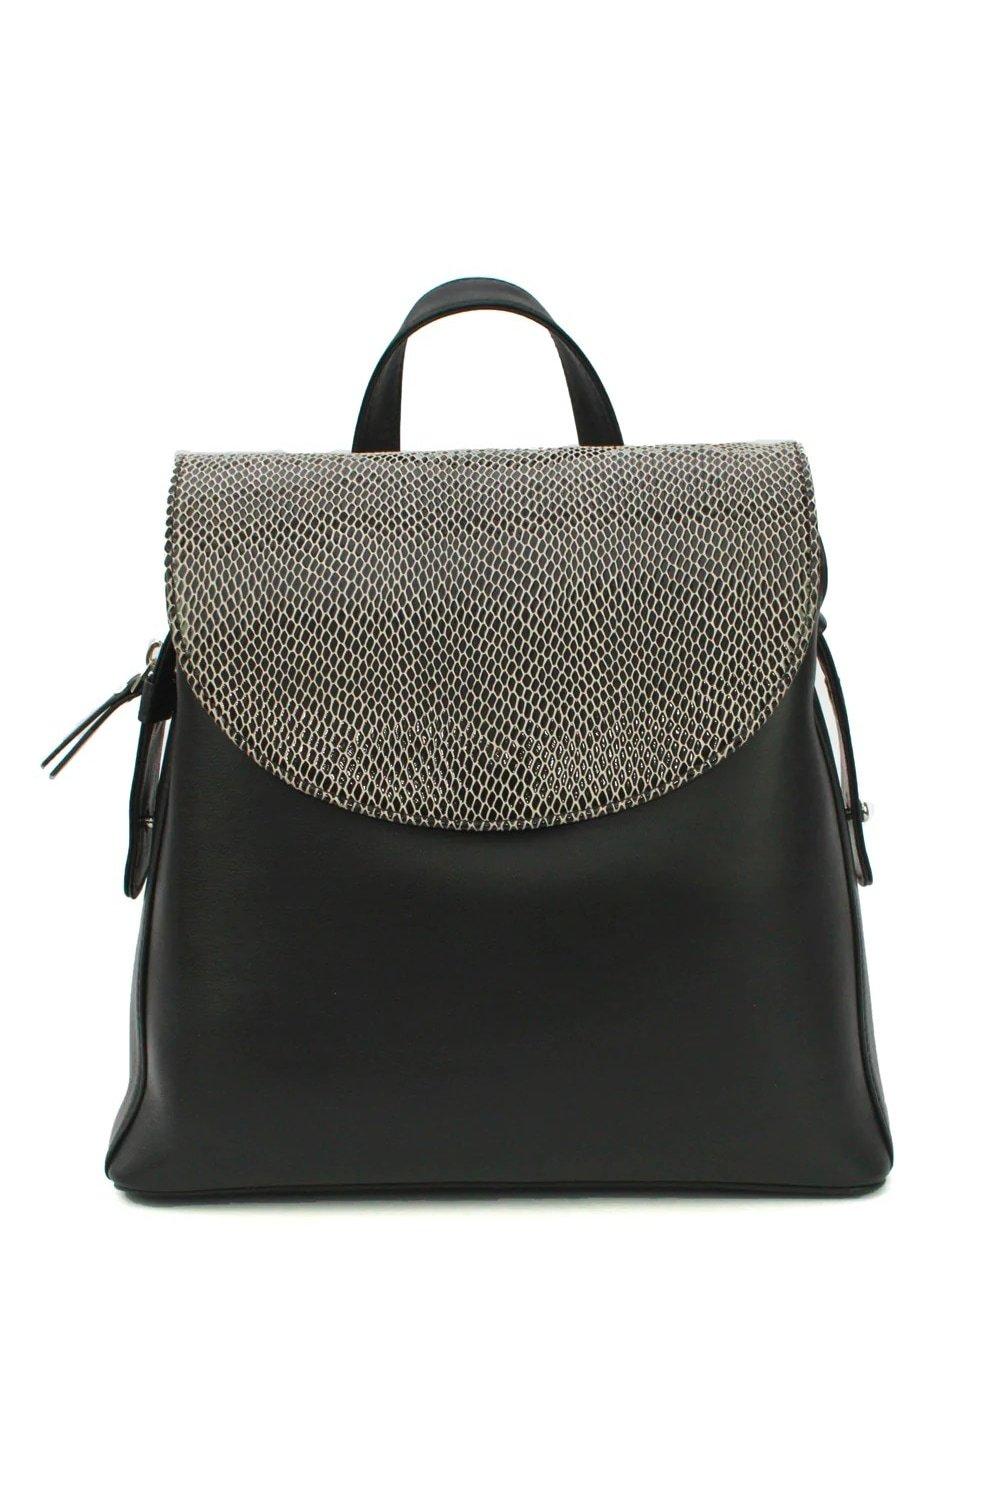 Кожаный рюкзак Petra со змеиным принтом Eastern Counties Leather, черный магнит лакарат дизайн